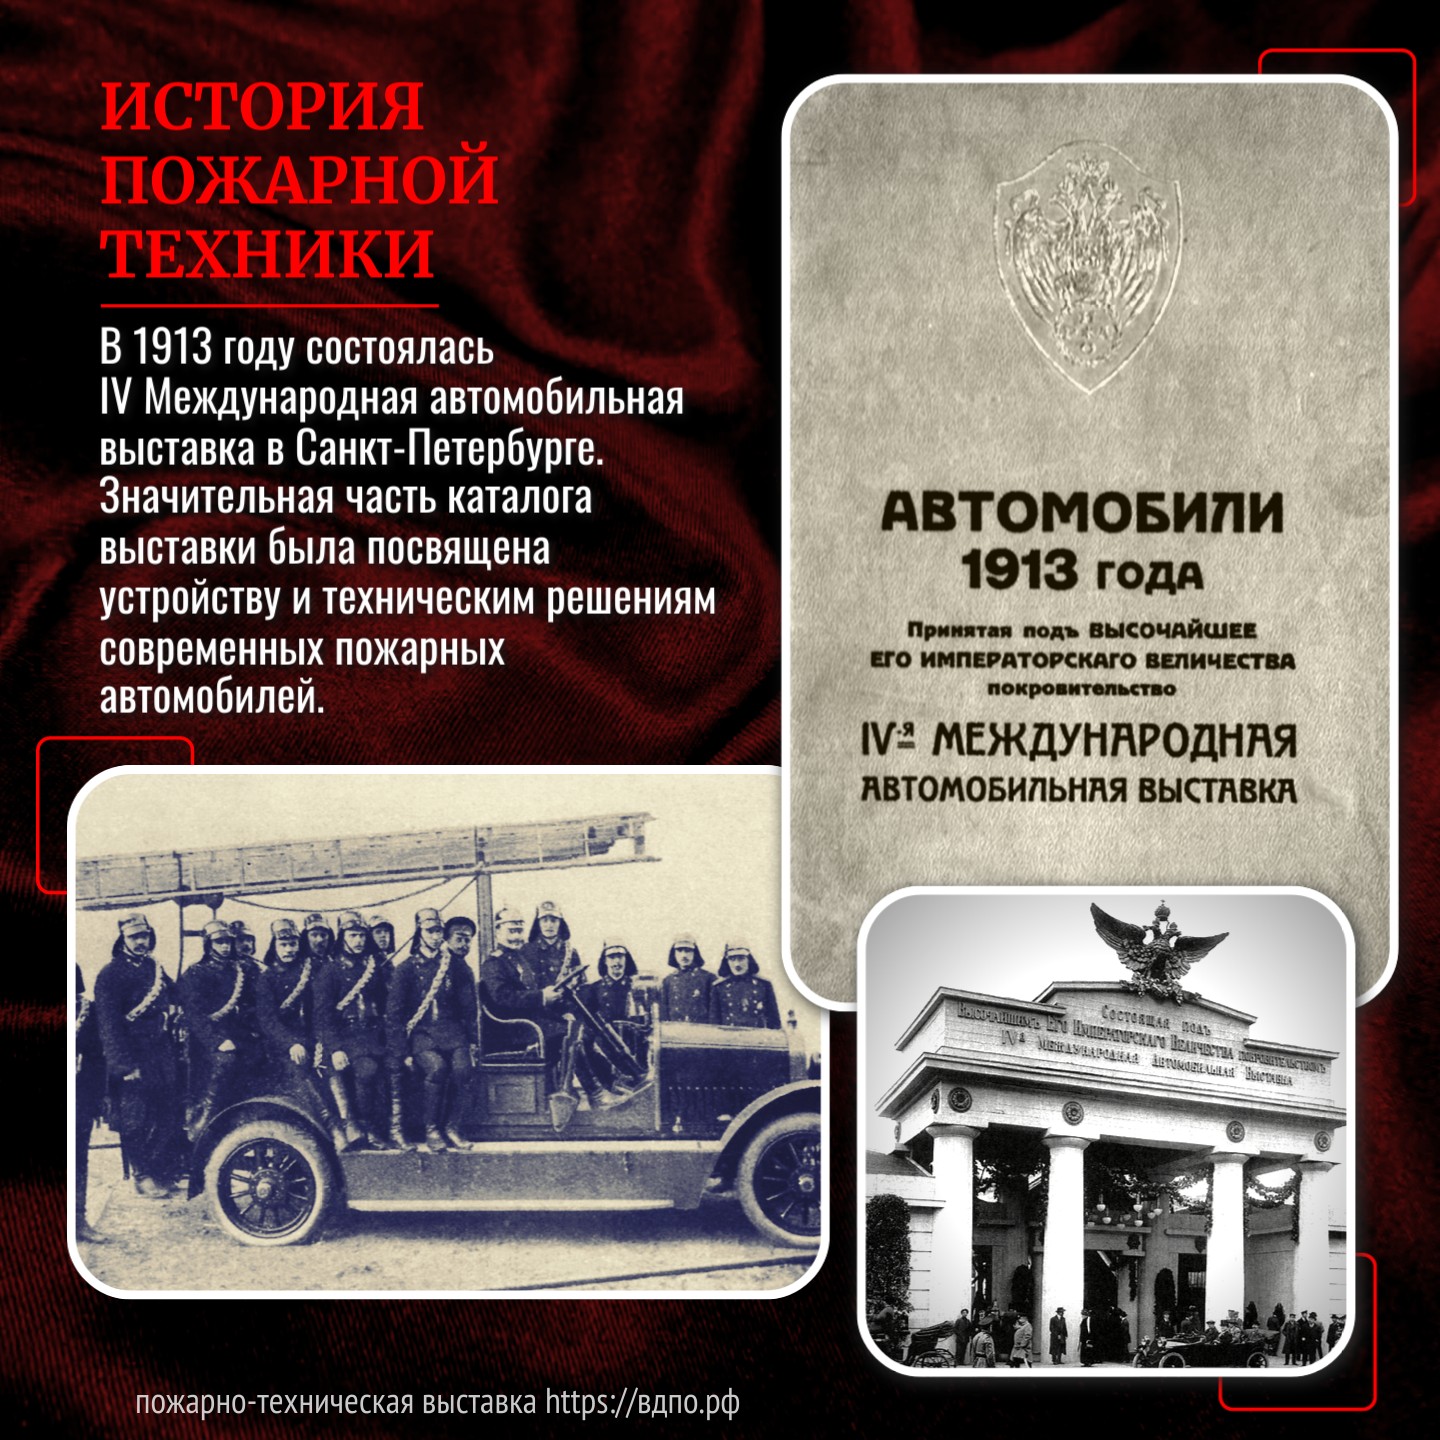 В 1913 году состоялась IV Международная автомобильная выставка в Санкт-Петербурге  5 мая 1913 года в Санкт-Петербурге распахнула свои двери IV Международная......